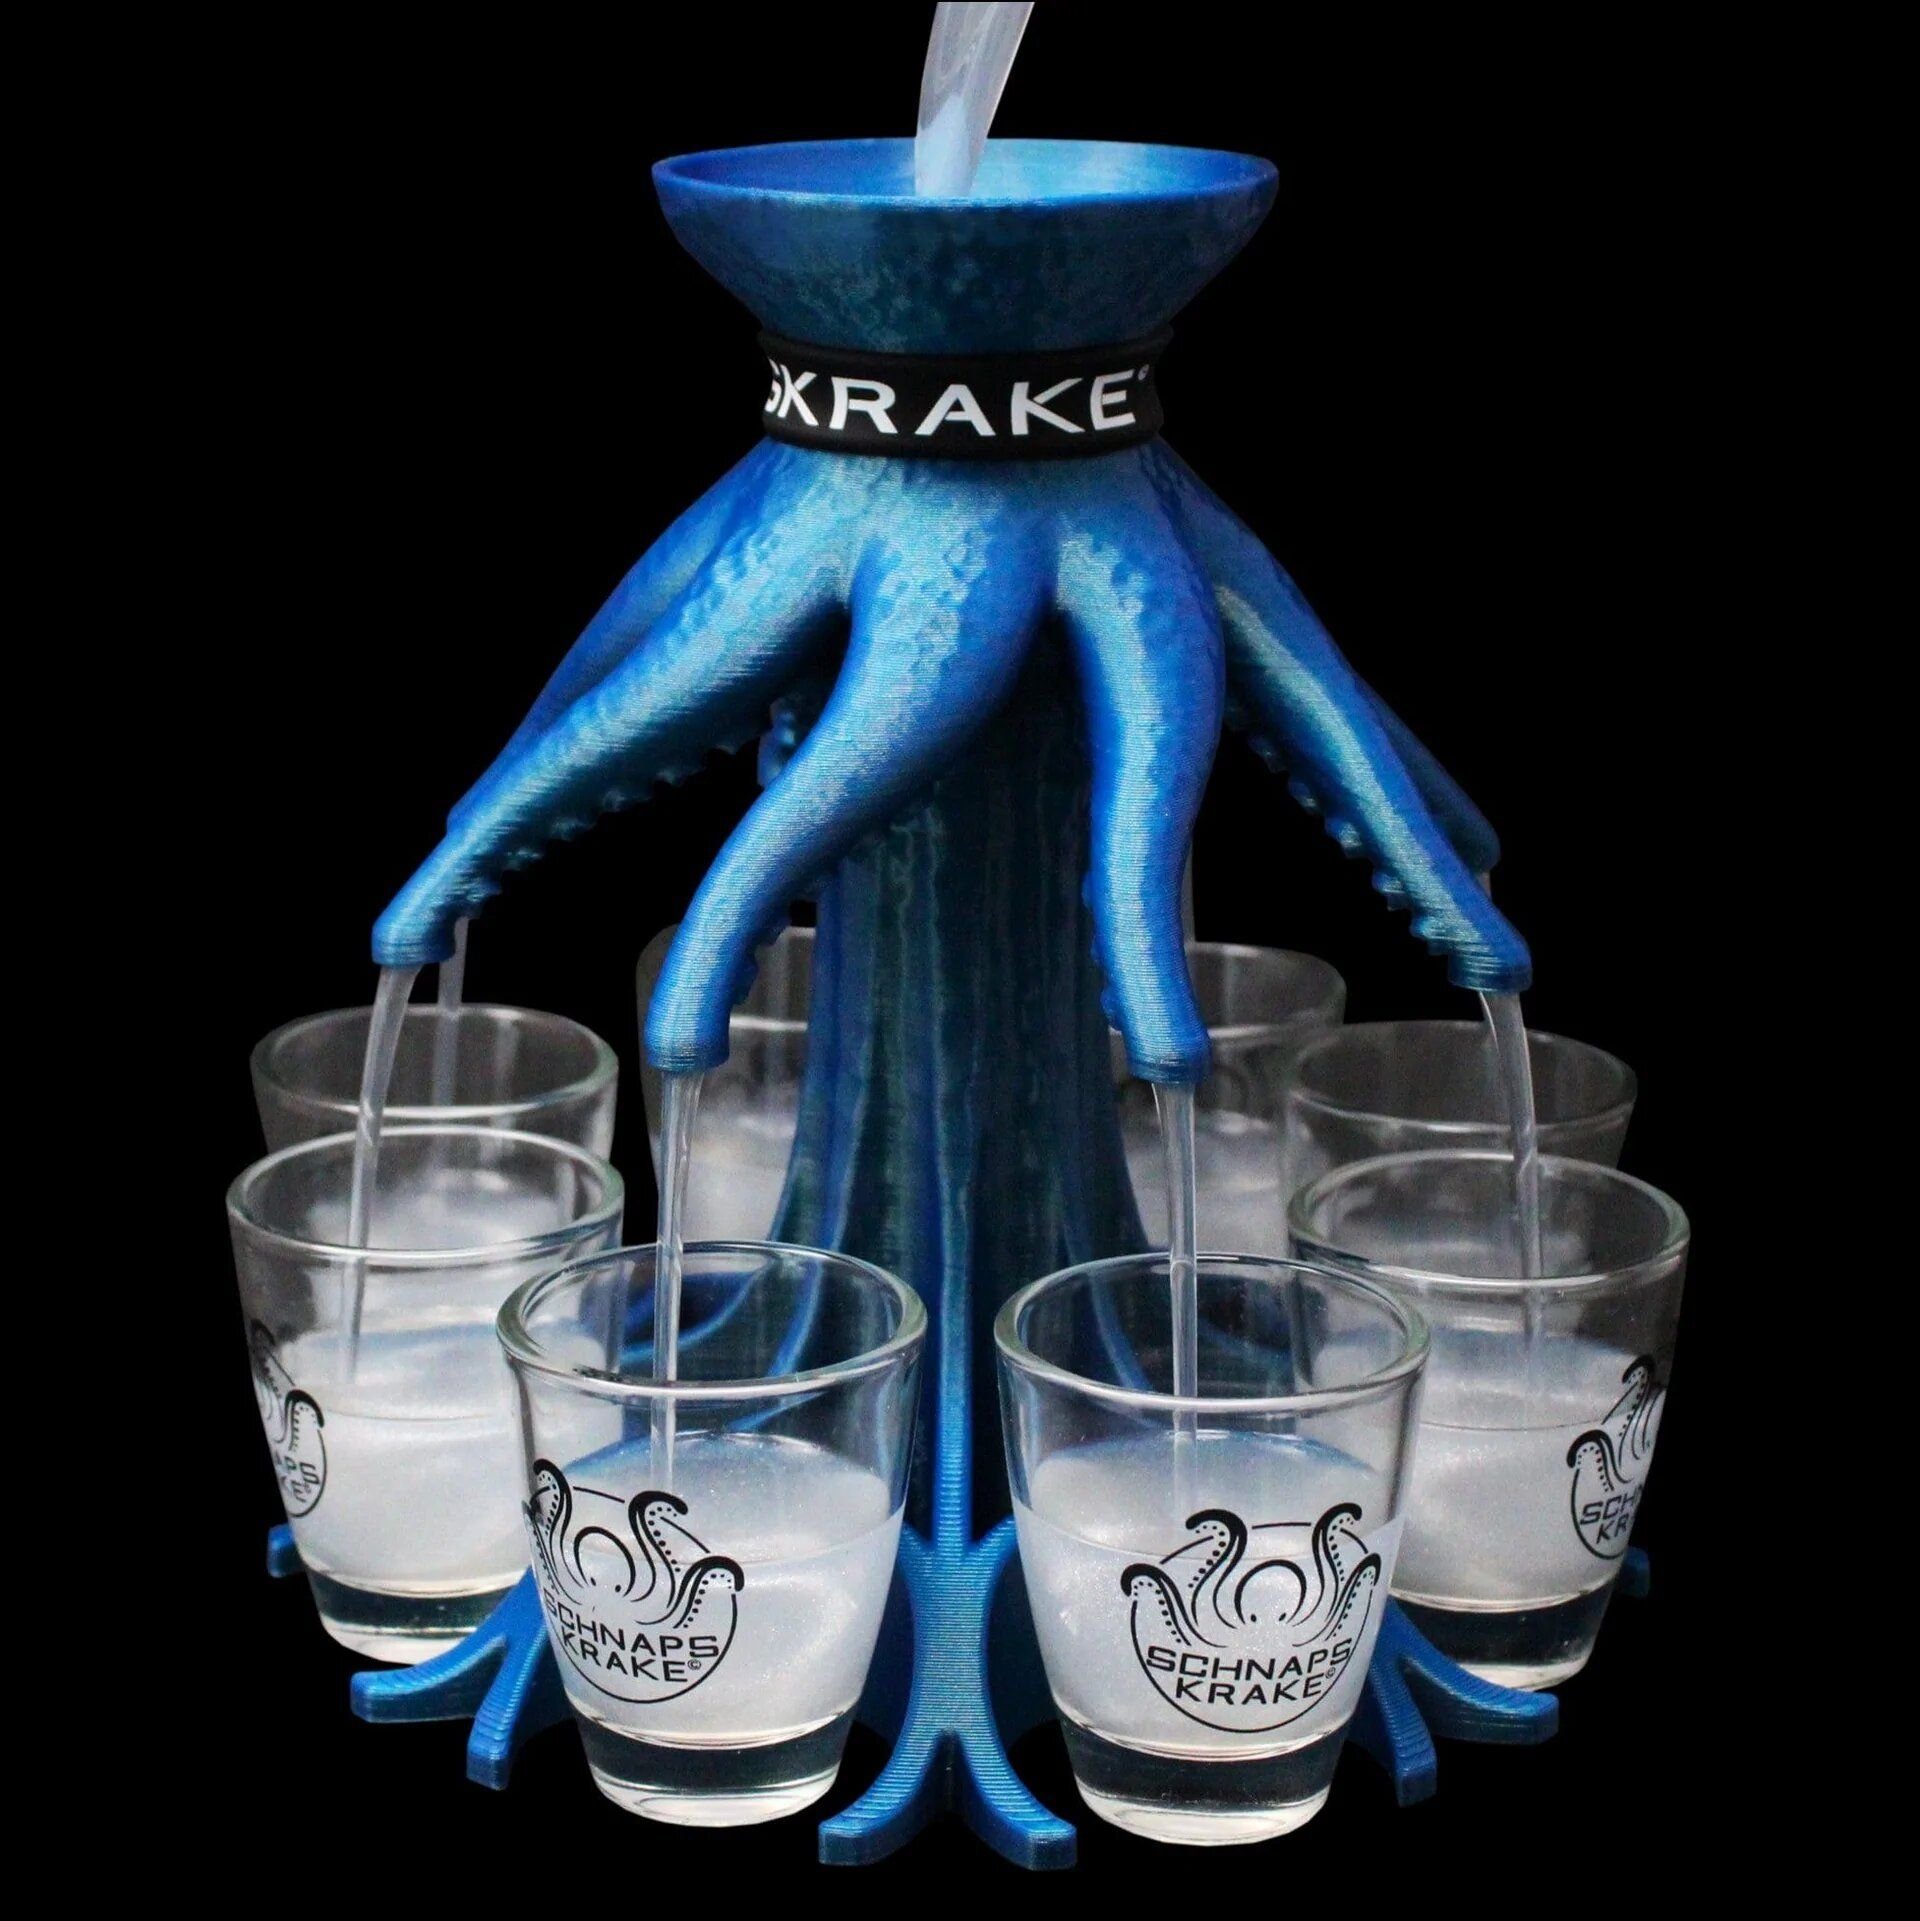 Schnapskrake Schnapsglas Schnapskrake ® Blau Shotverteiler Getränkeverteiler 8 Gläser á 3 cl